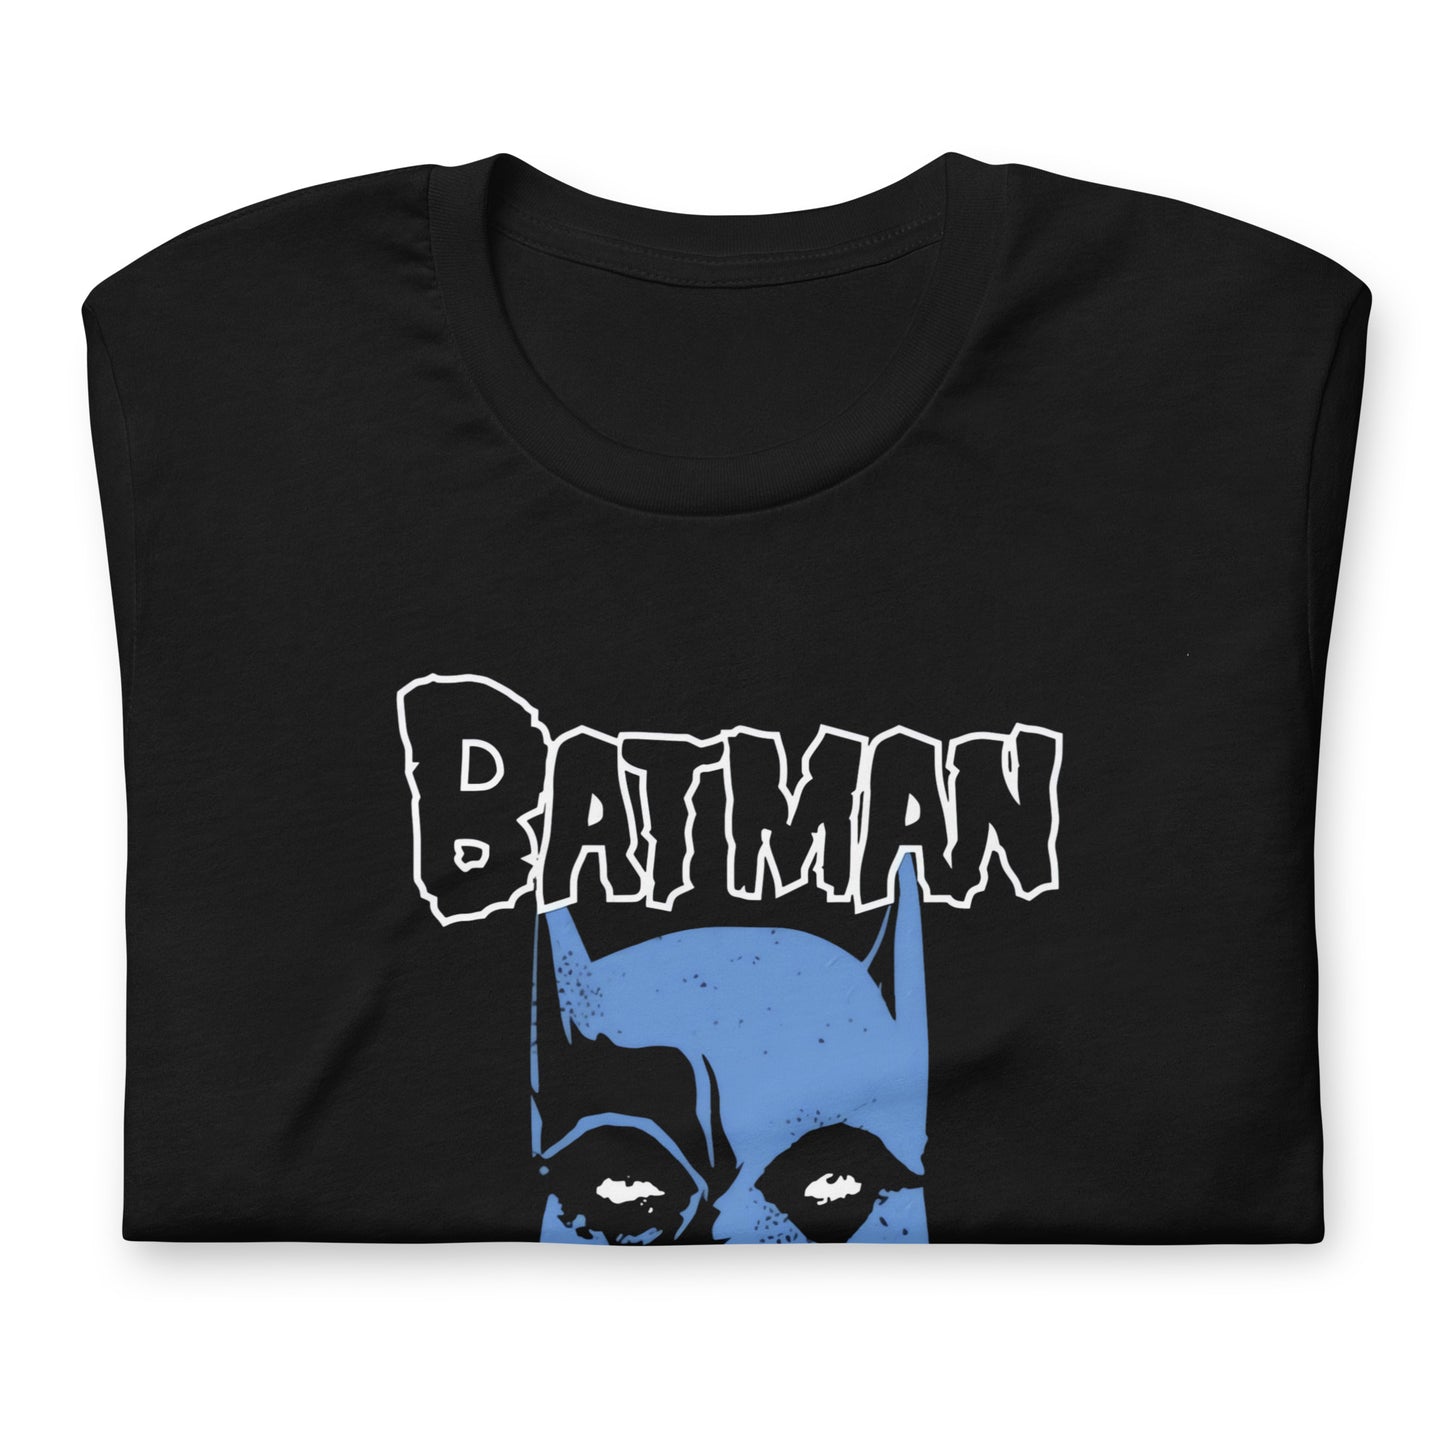 La Camiseta Batman Misfits es una prenda que combina dos iconos de la cultura pop: el Caballero de la Noche y la banda de punk rock The Misfits.